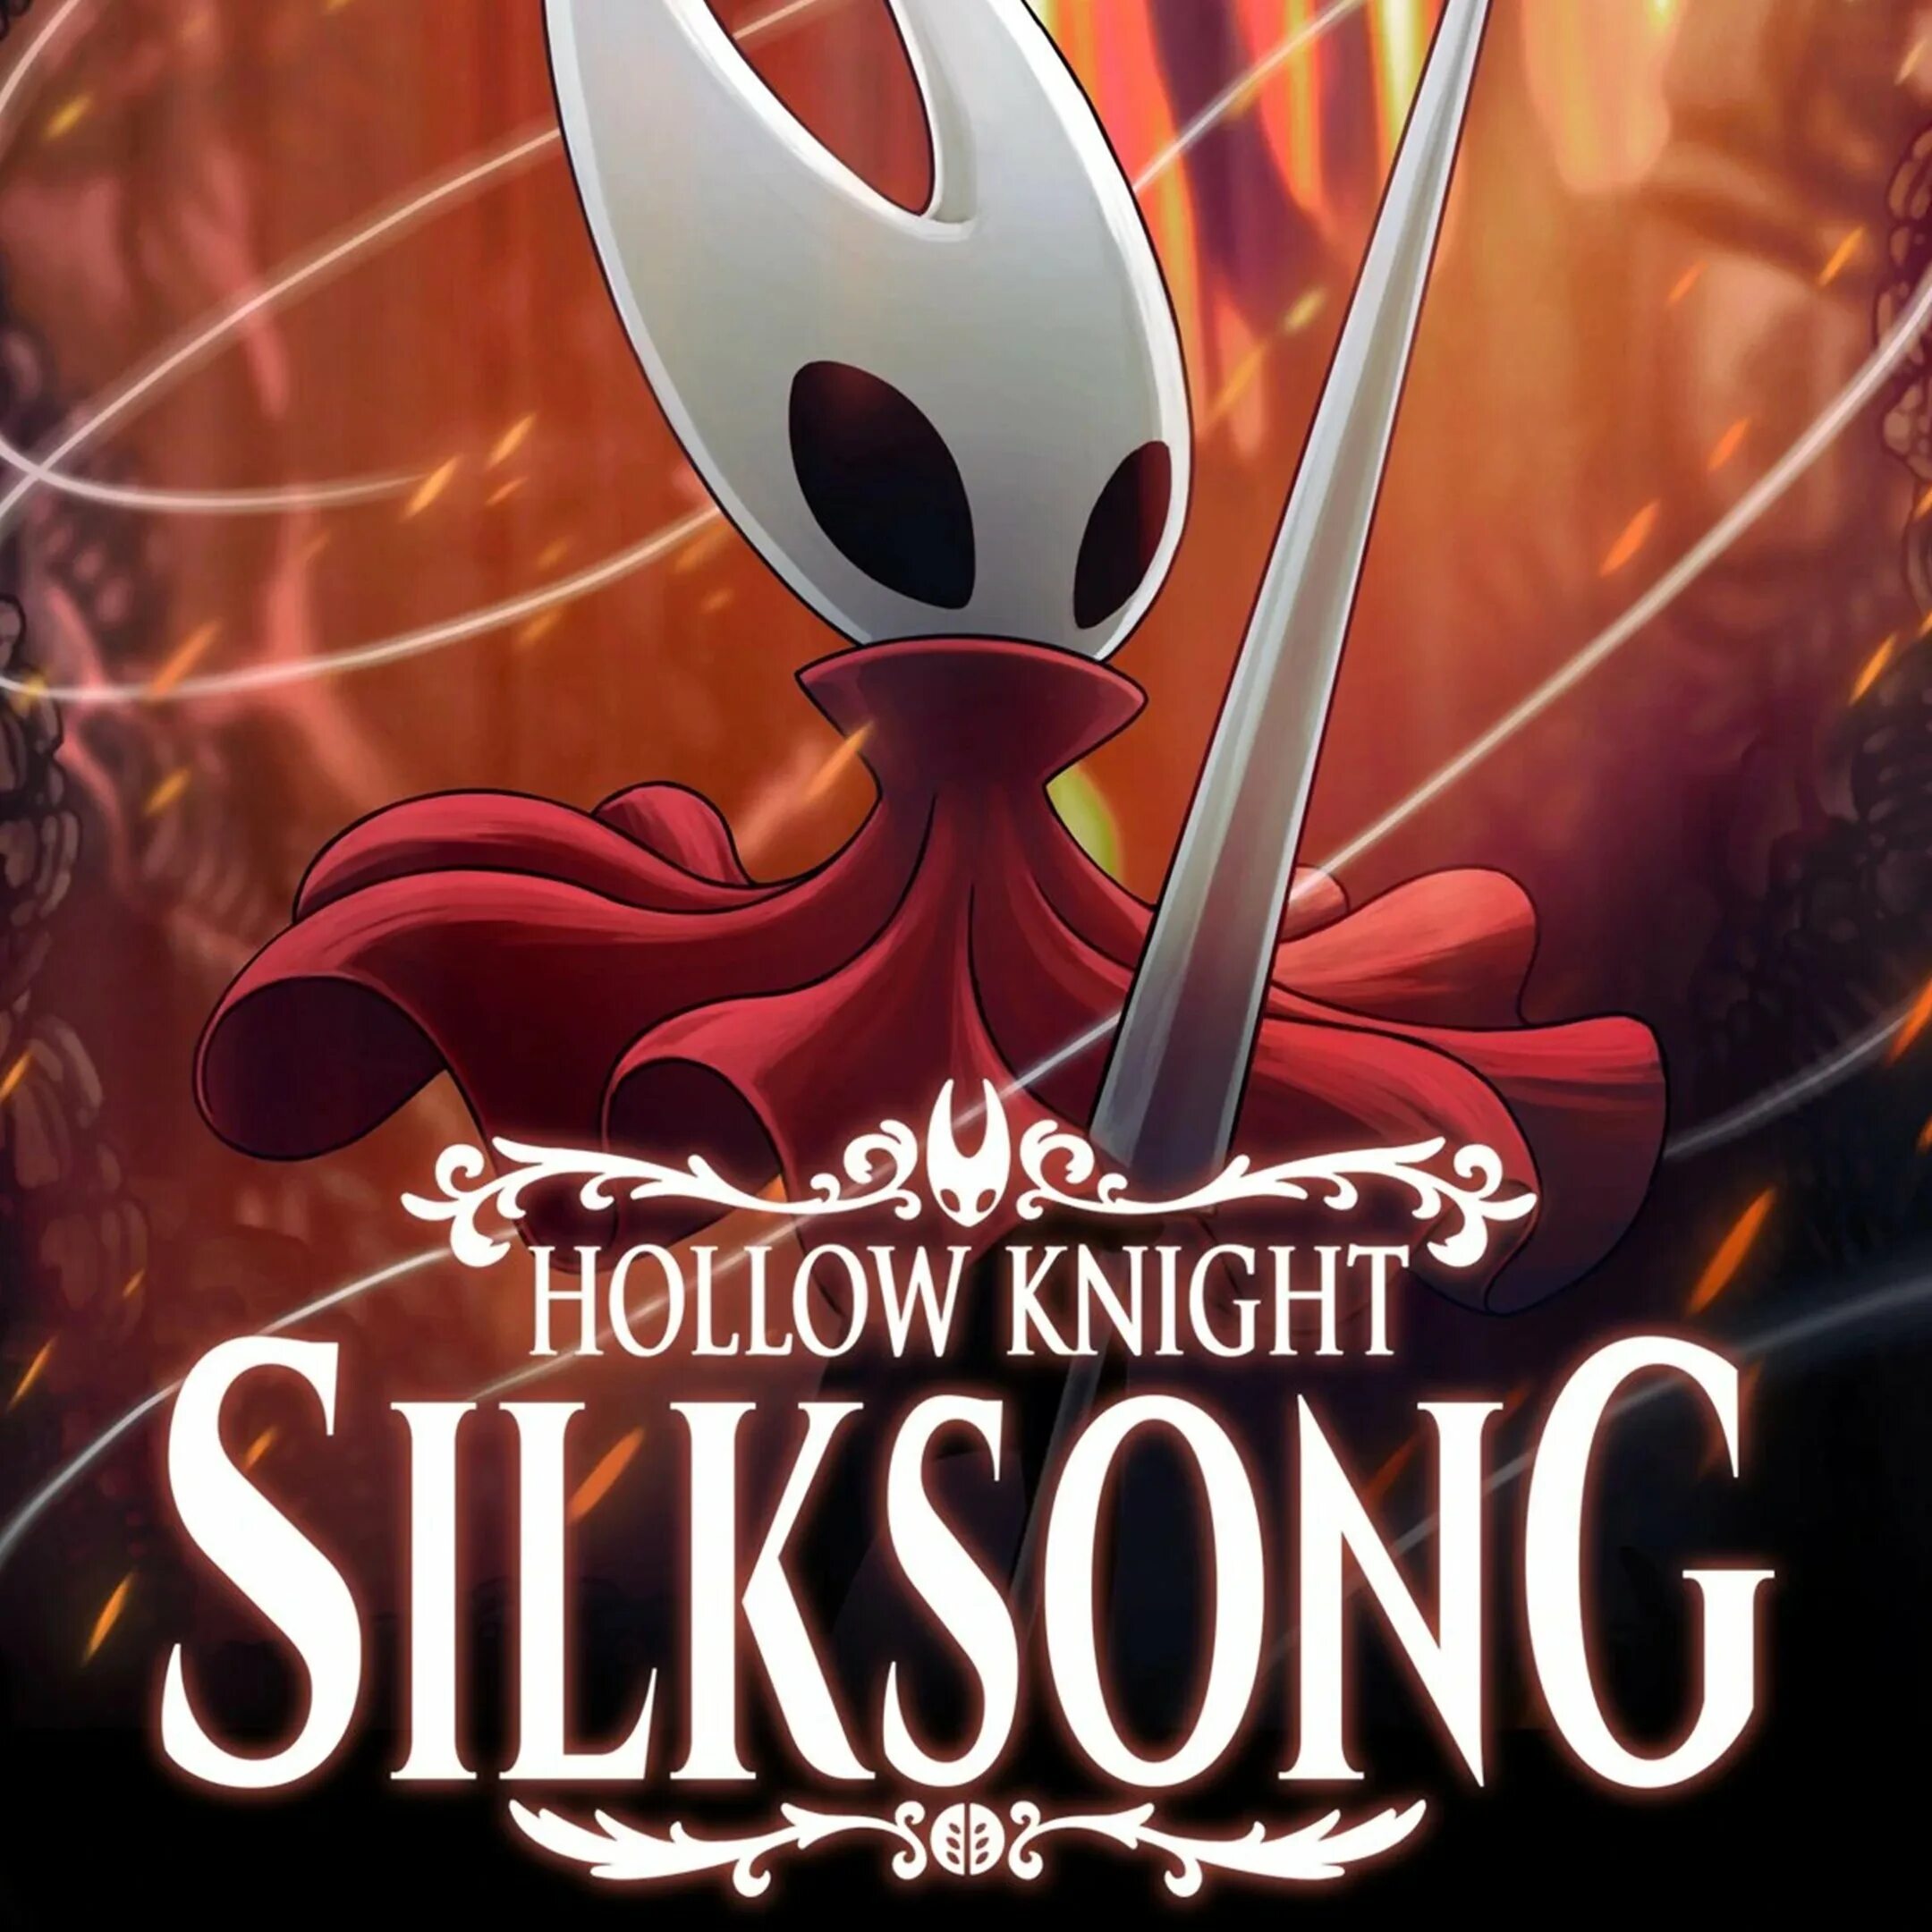 Silksong. Hollow Knight SILKSONG. Hollow Knight SILKSONG poster. SILKSONG Шерман. Hollow Knight SILKSONG Постер.